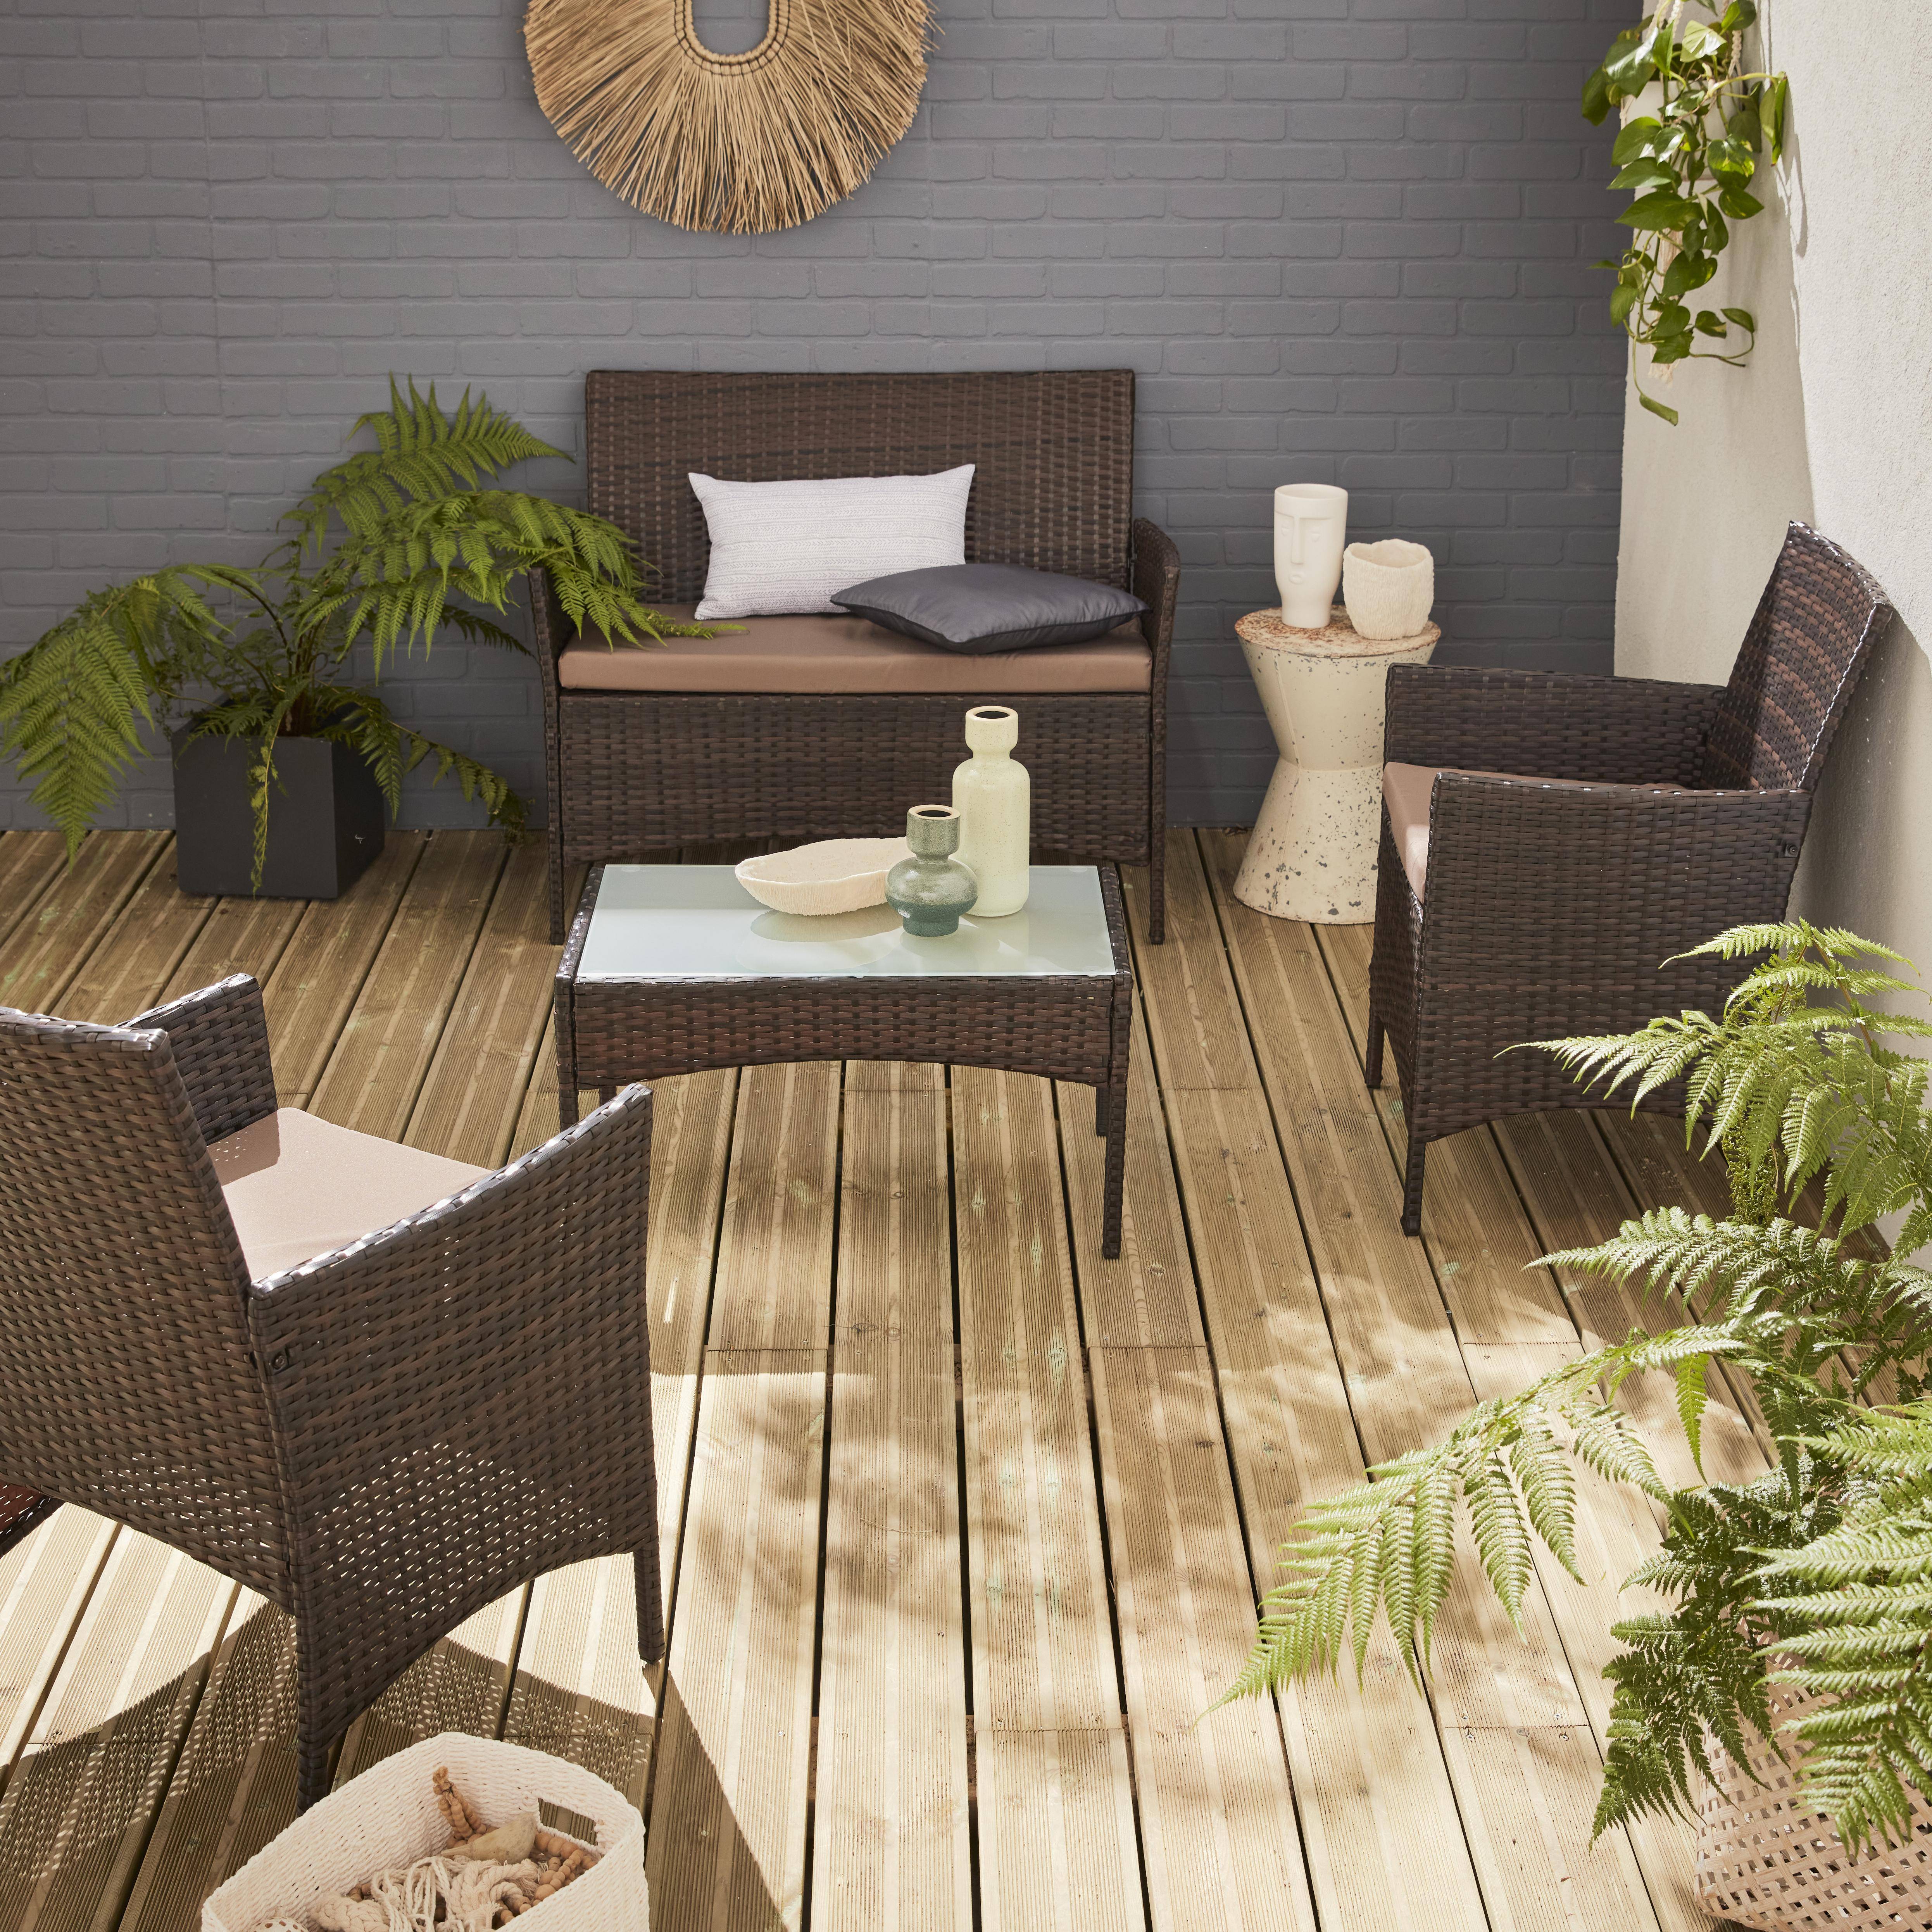 Salotto da giardino in resina intrecciata - modello: Moltés - Cioccolato, cuscini, colore: Marrone - 4 posti - 1 divano, 2 poltrone, un tavolino  basso Photo1